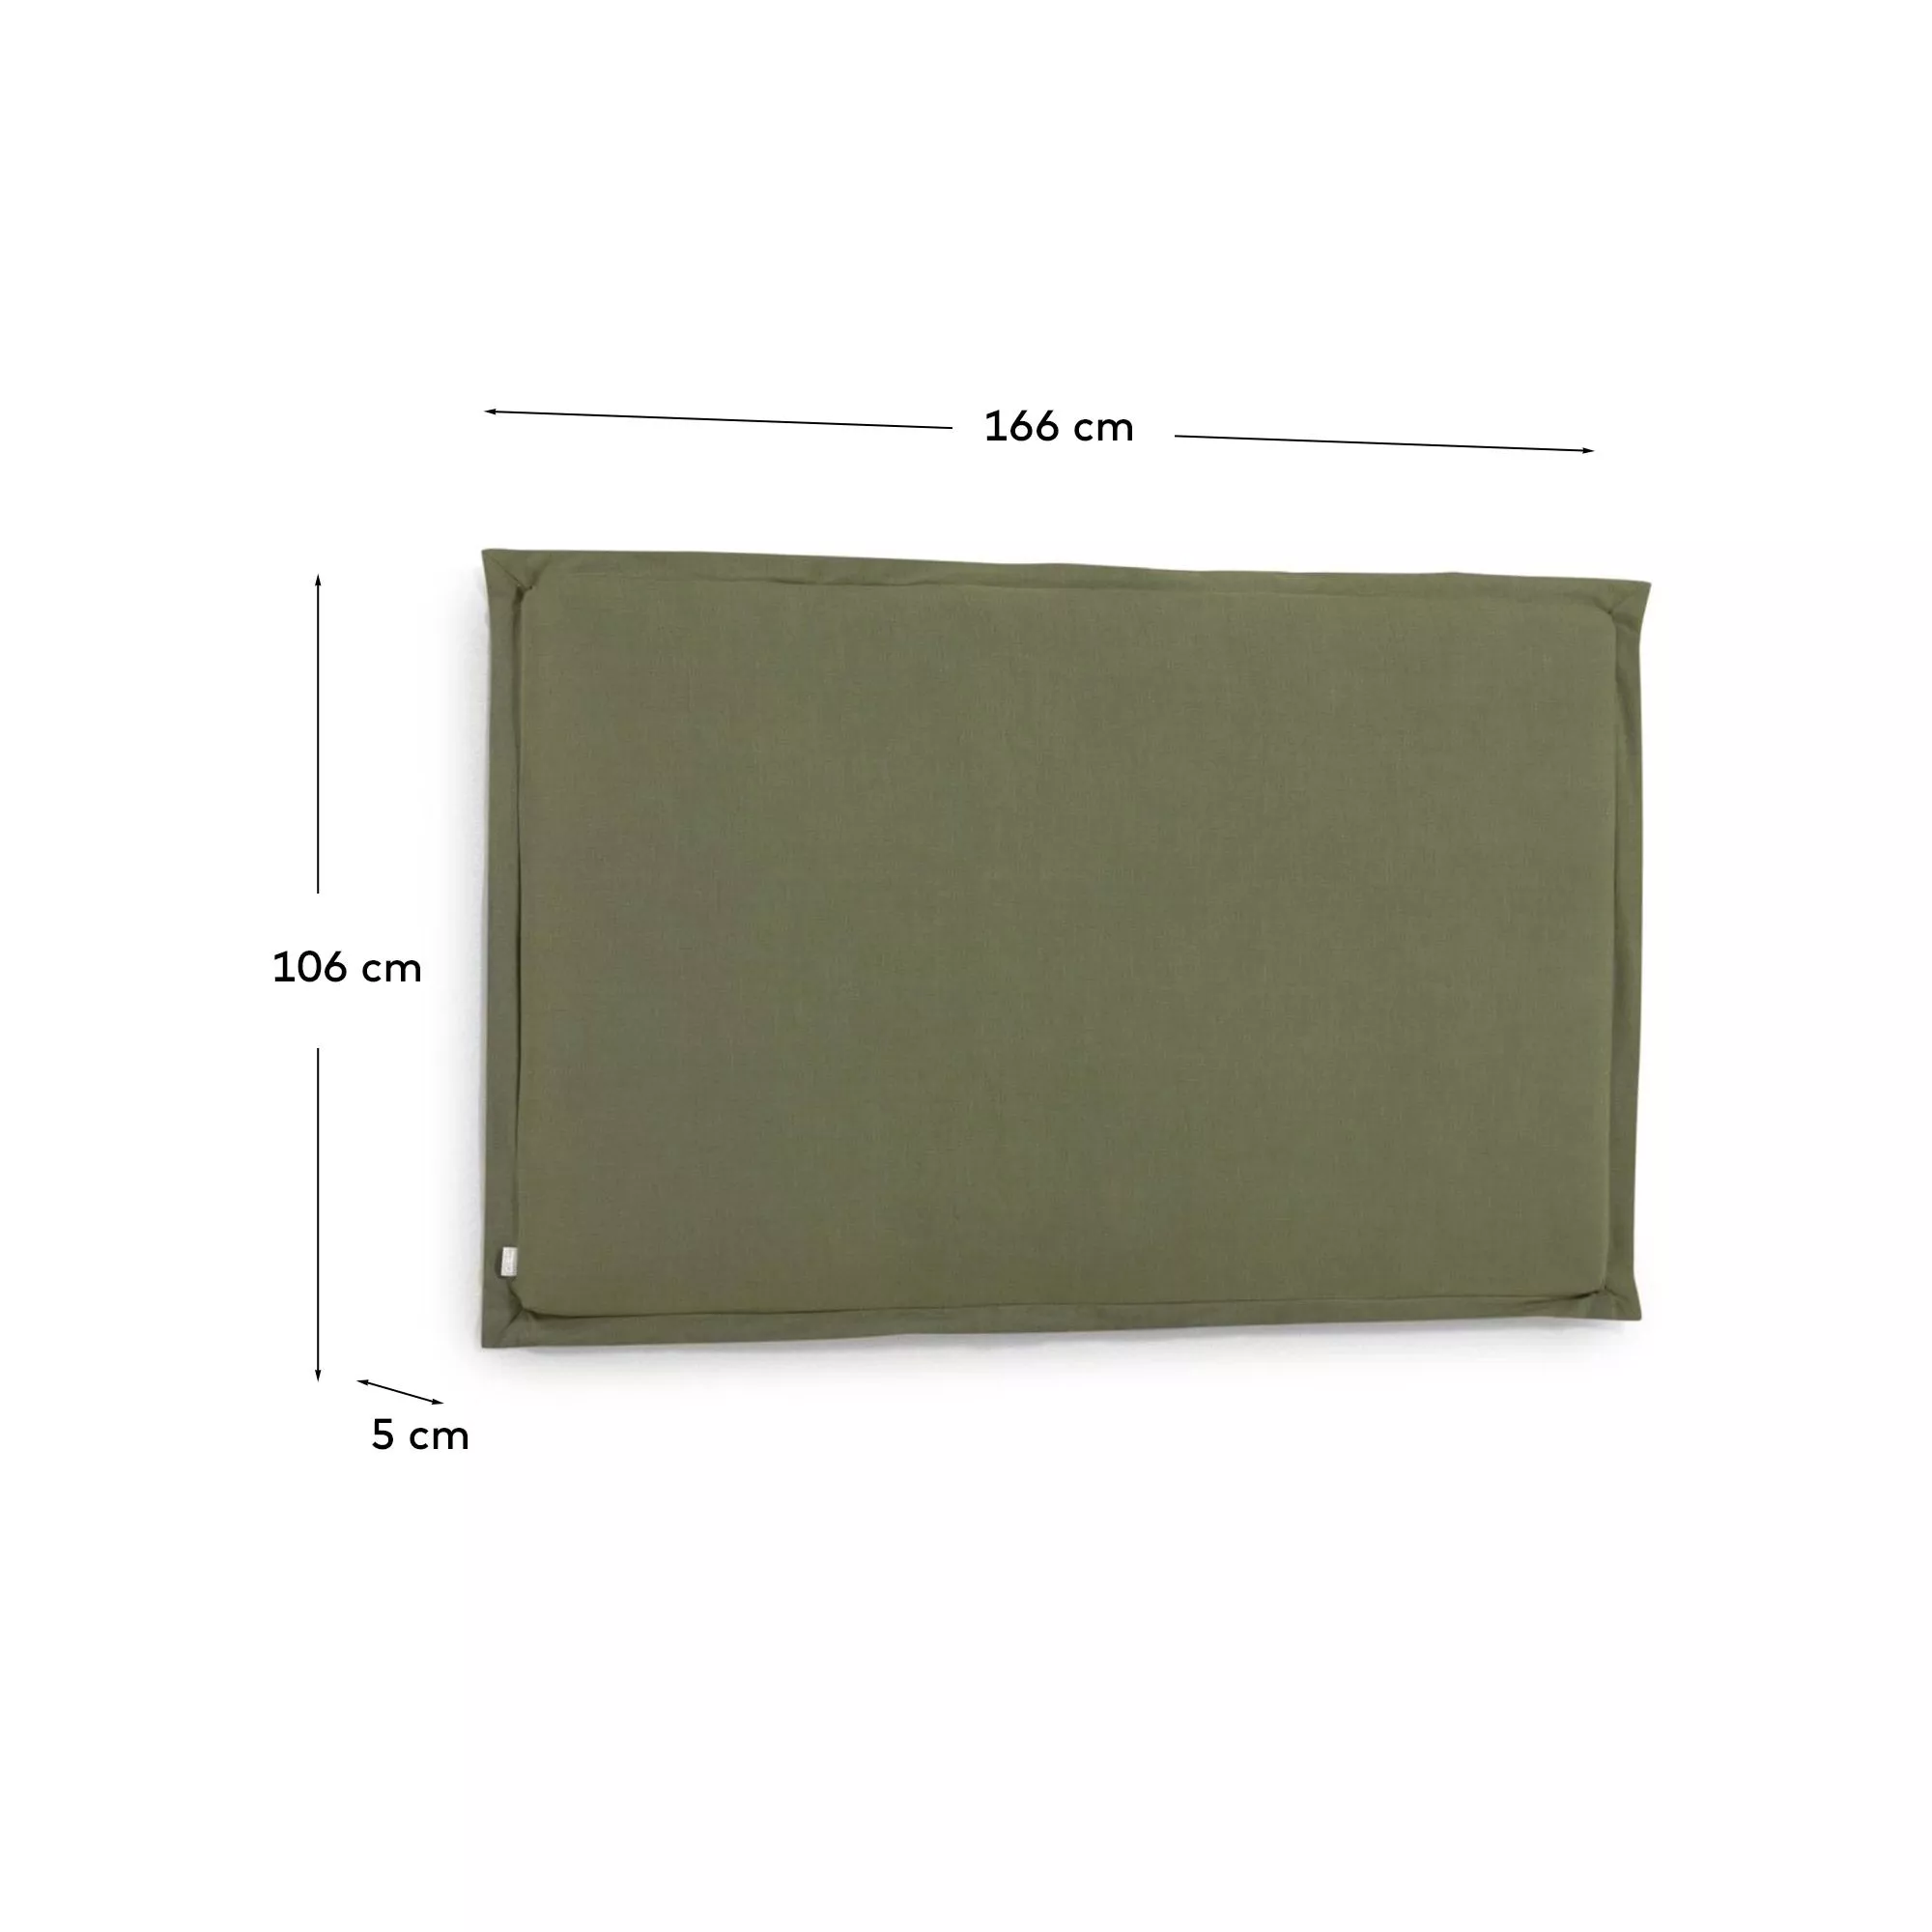 Изголовье La Forma Tanit зеленоесо съемным чехлом 166 x 106 см